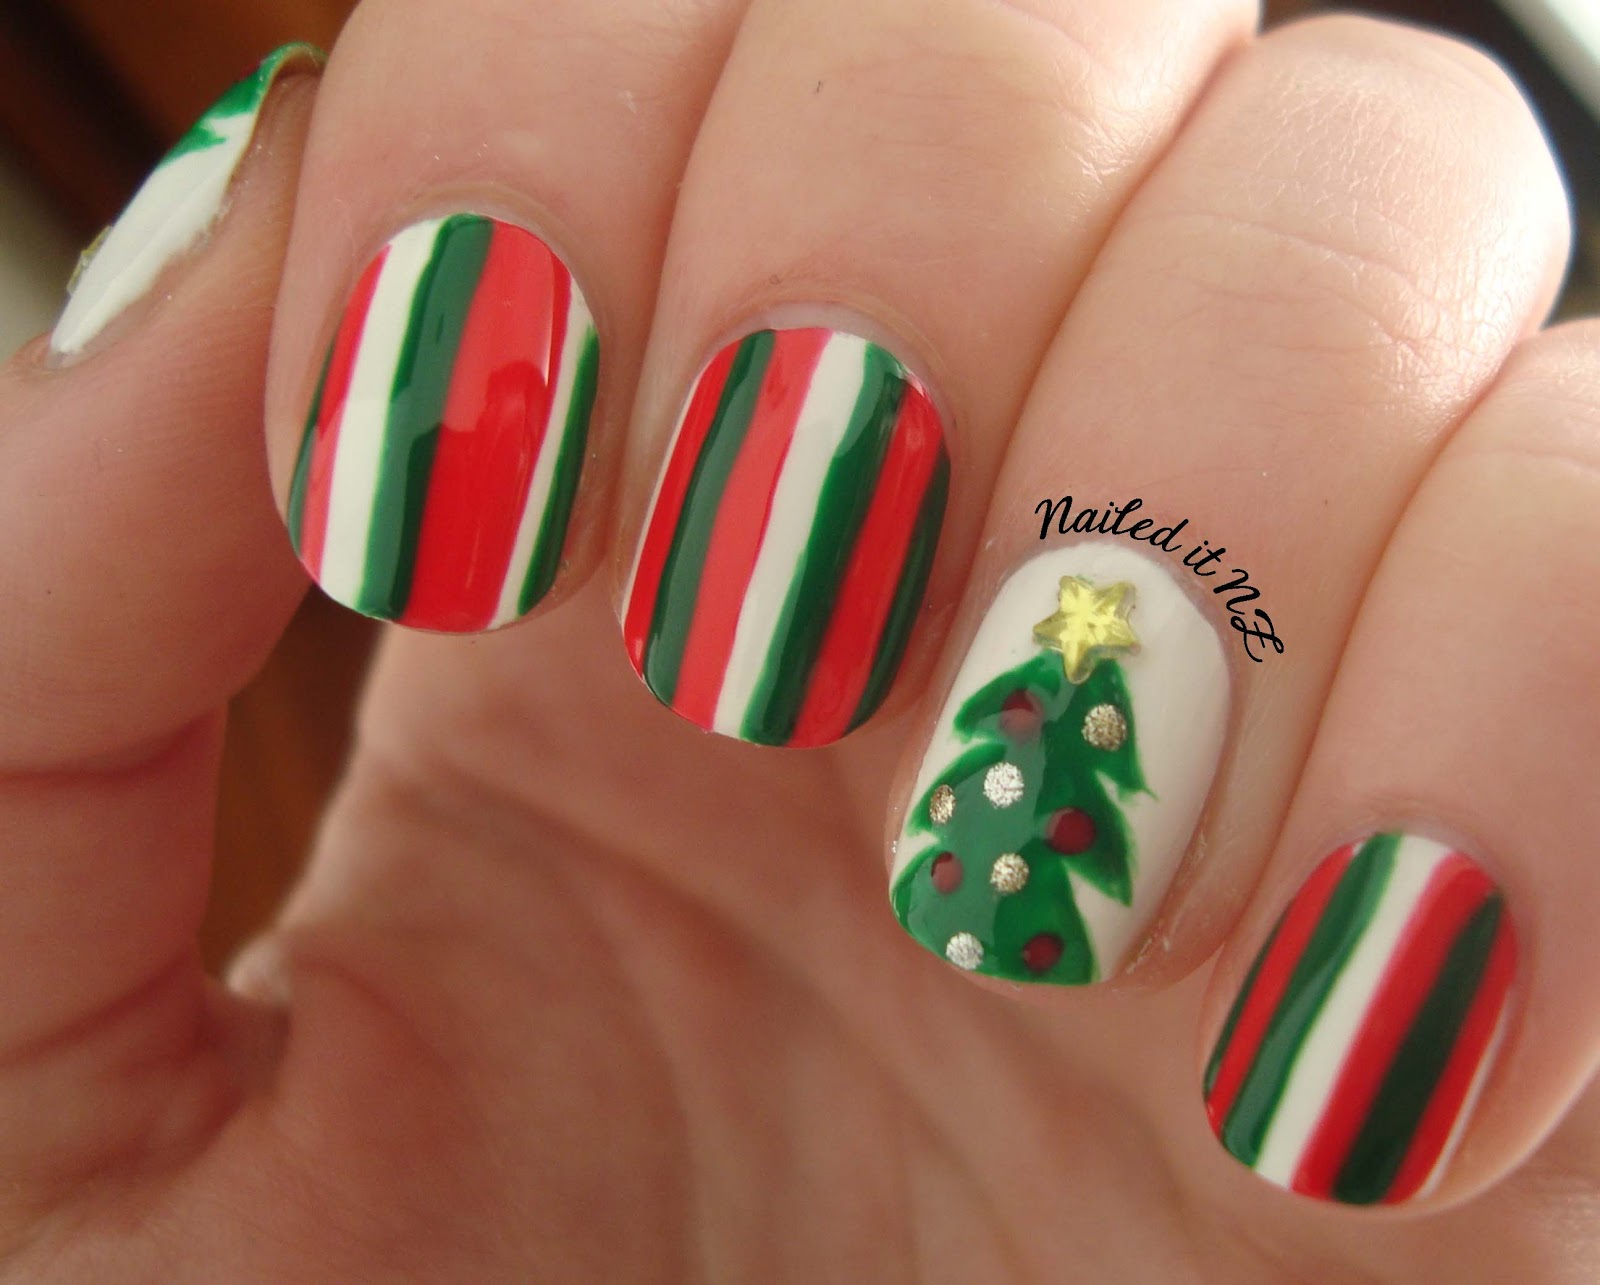 Nail art for short nails #4 - Christmas tree nails + Mosaic nails ...